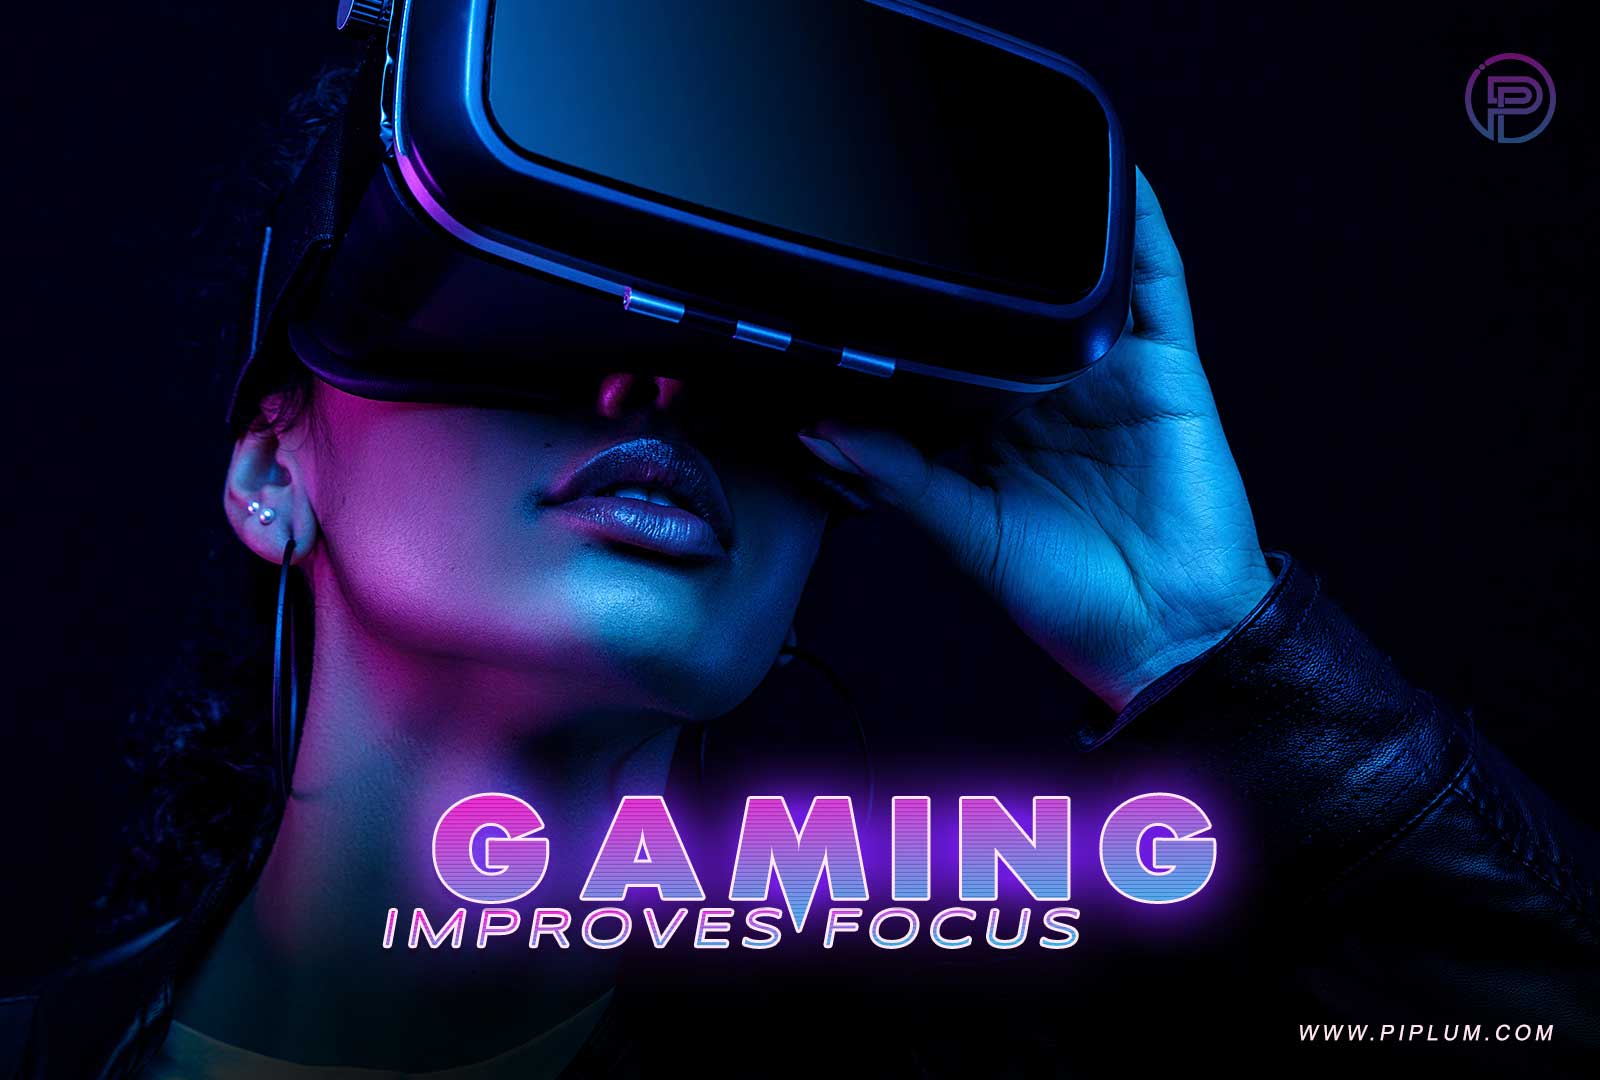 Gaming improves focus. 